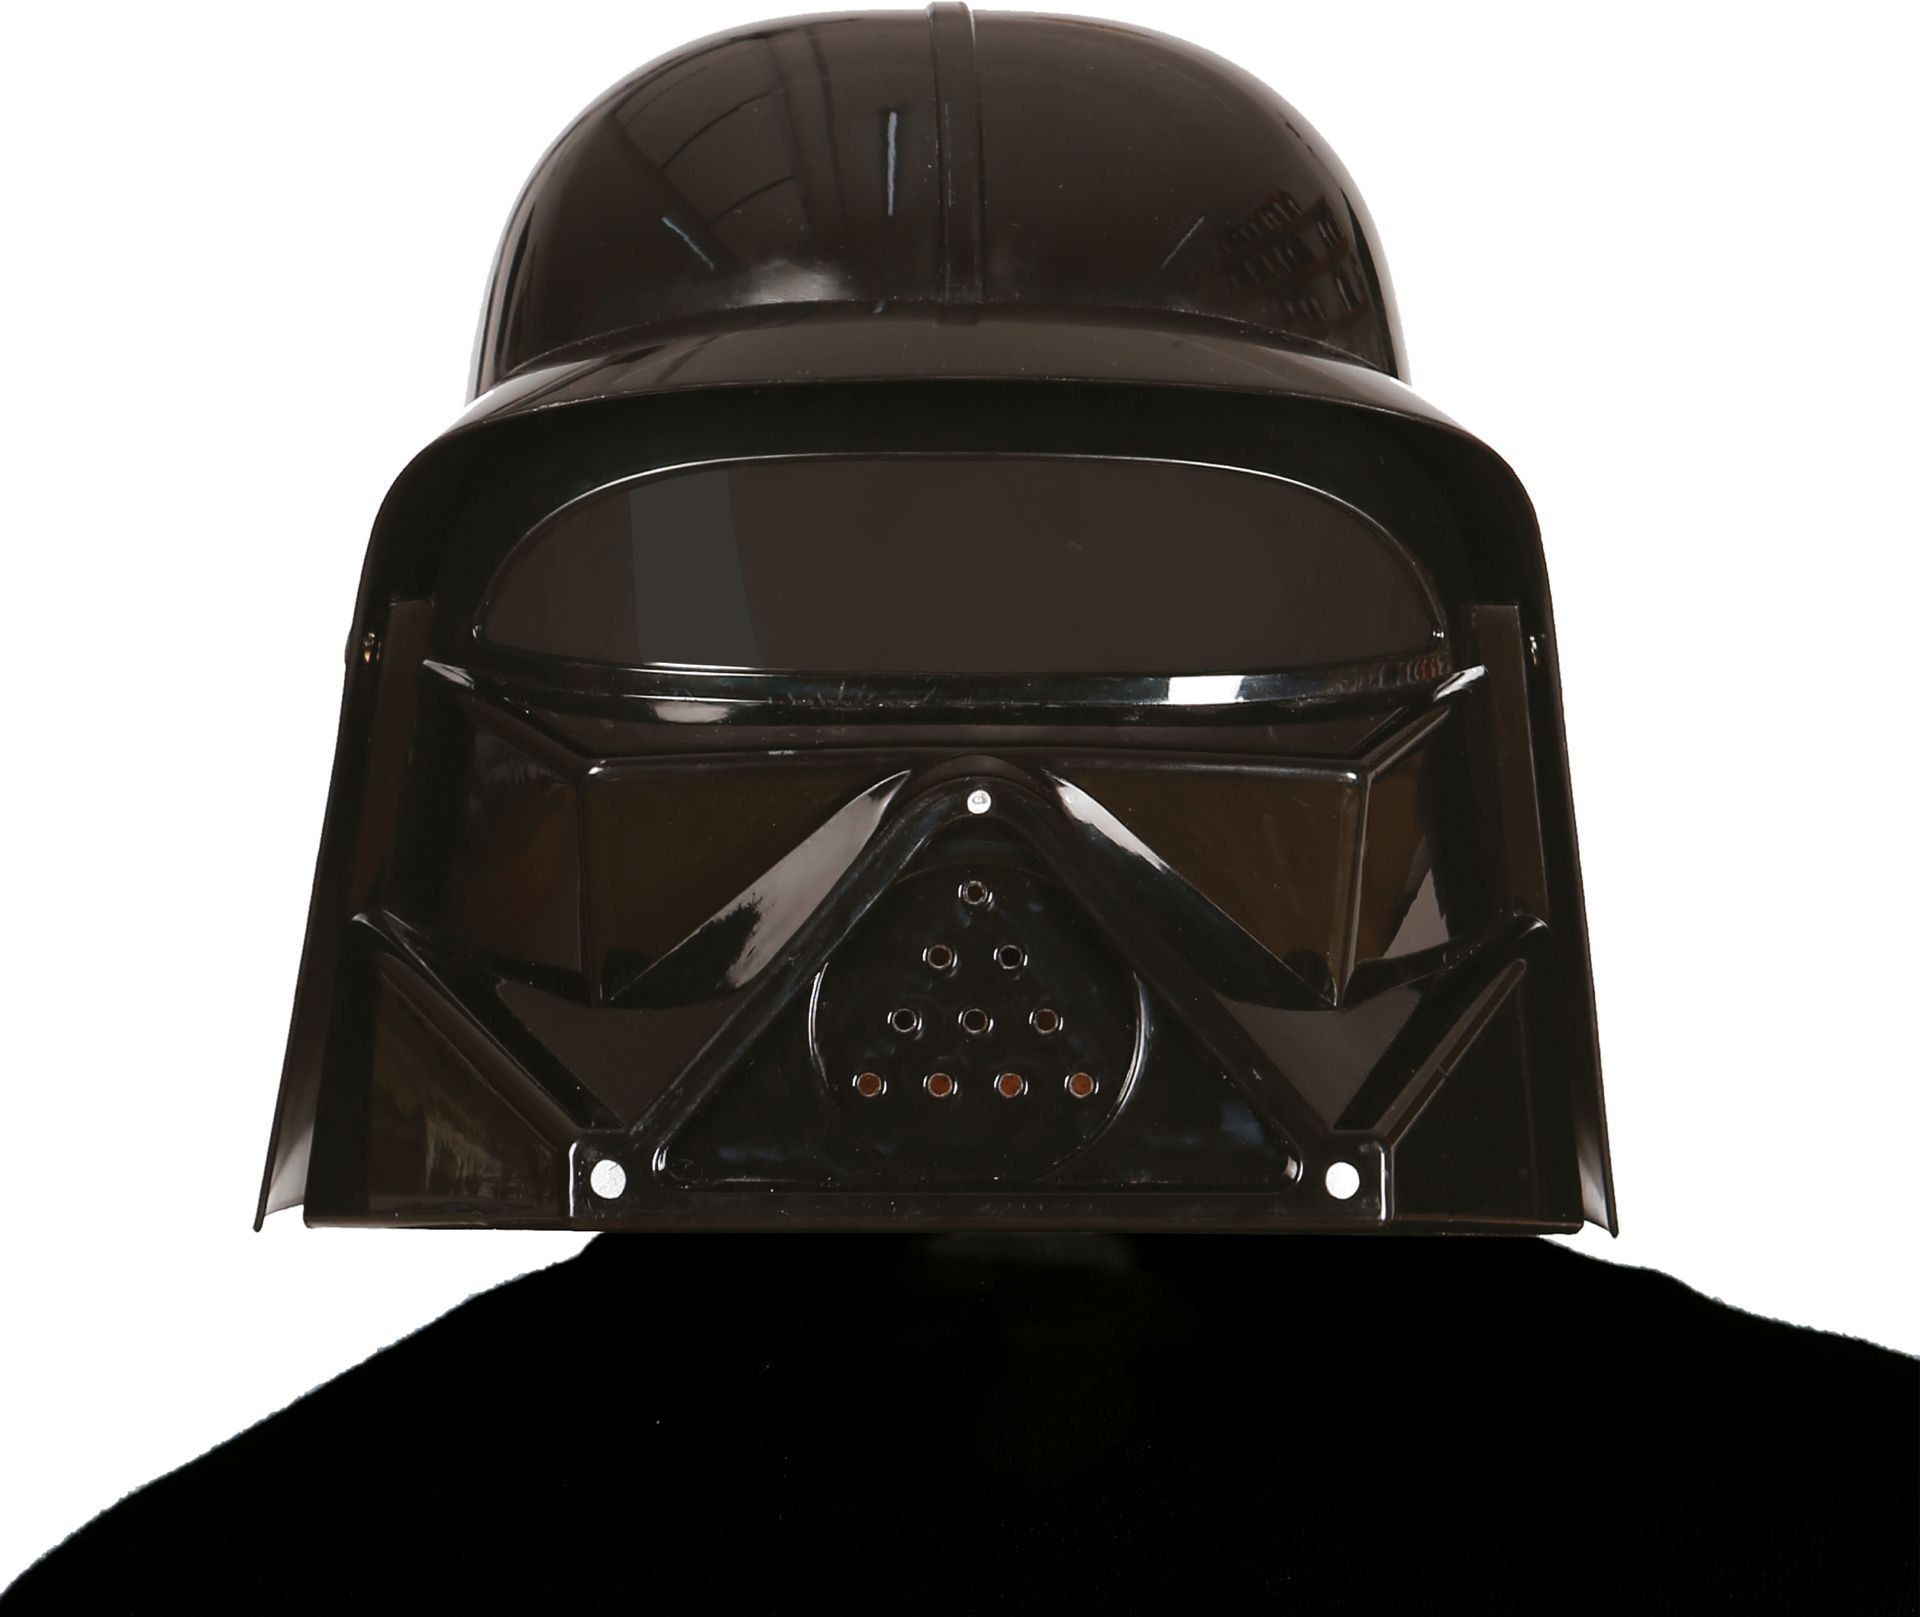 Star Wars Darth Vader helm